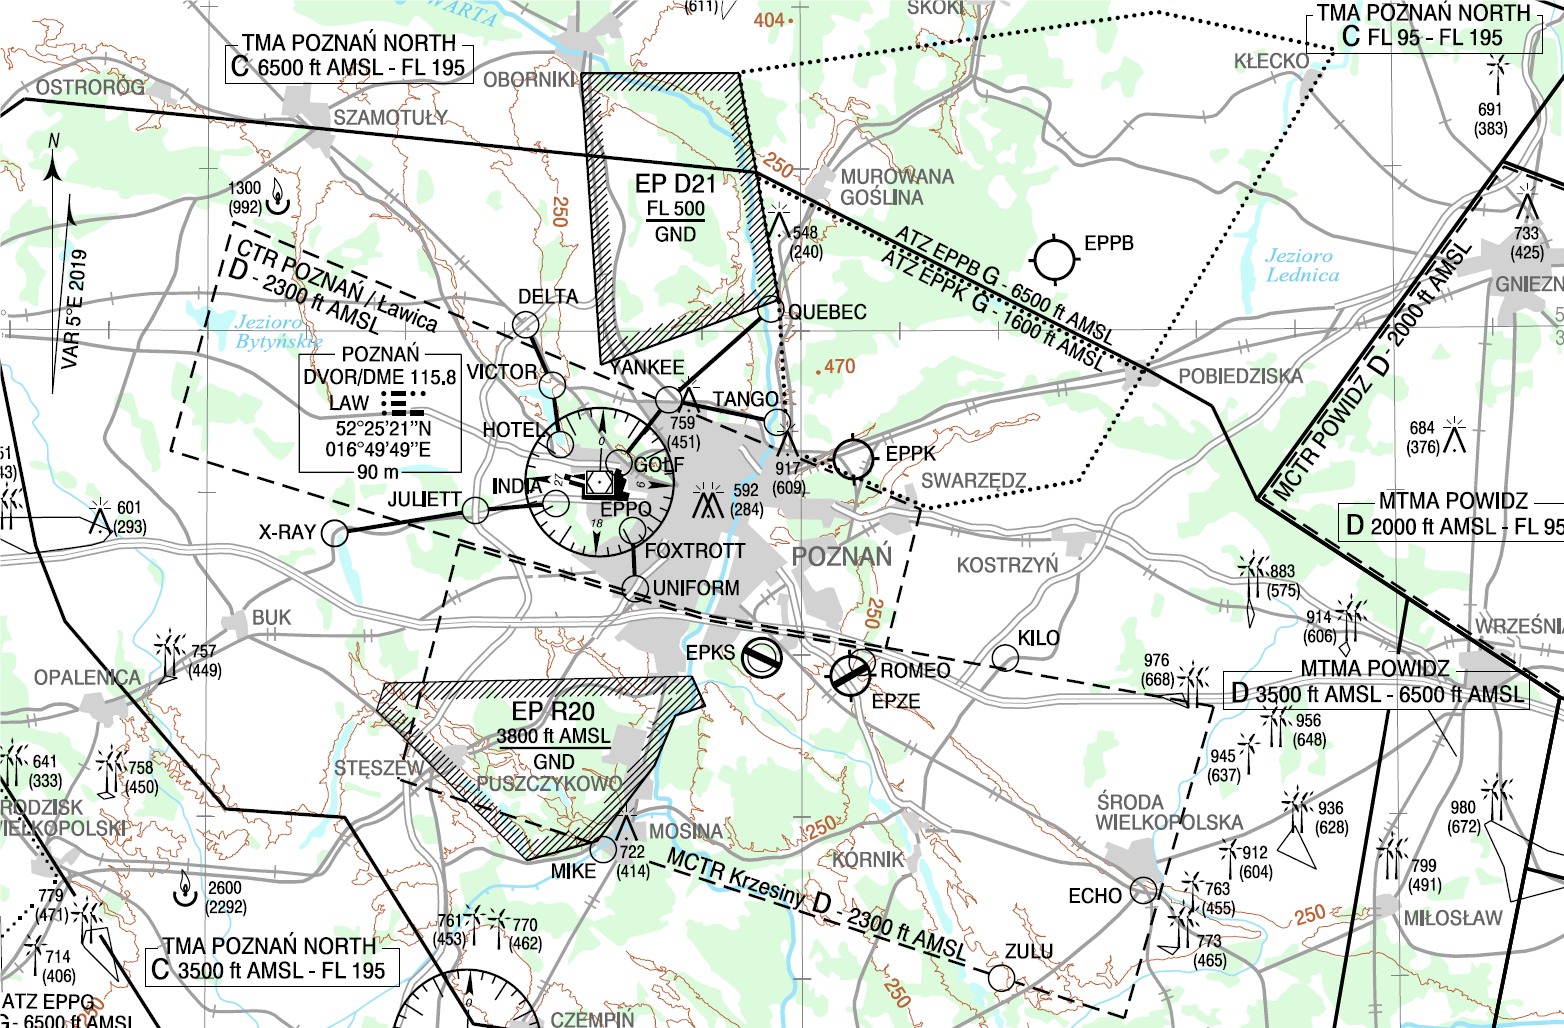 Informacja dot. planowanych zmian w przestrzeni powietrznej. Zmiana punktów oraz procedur VFR dla lotniska Poznań (EPPO)